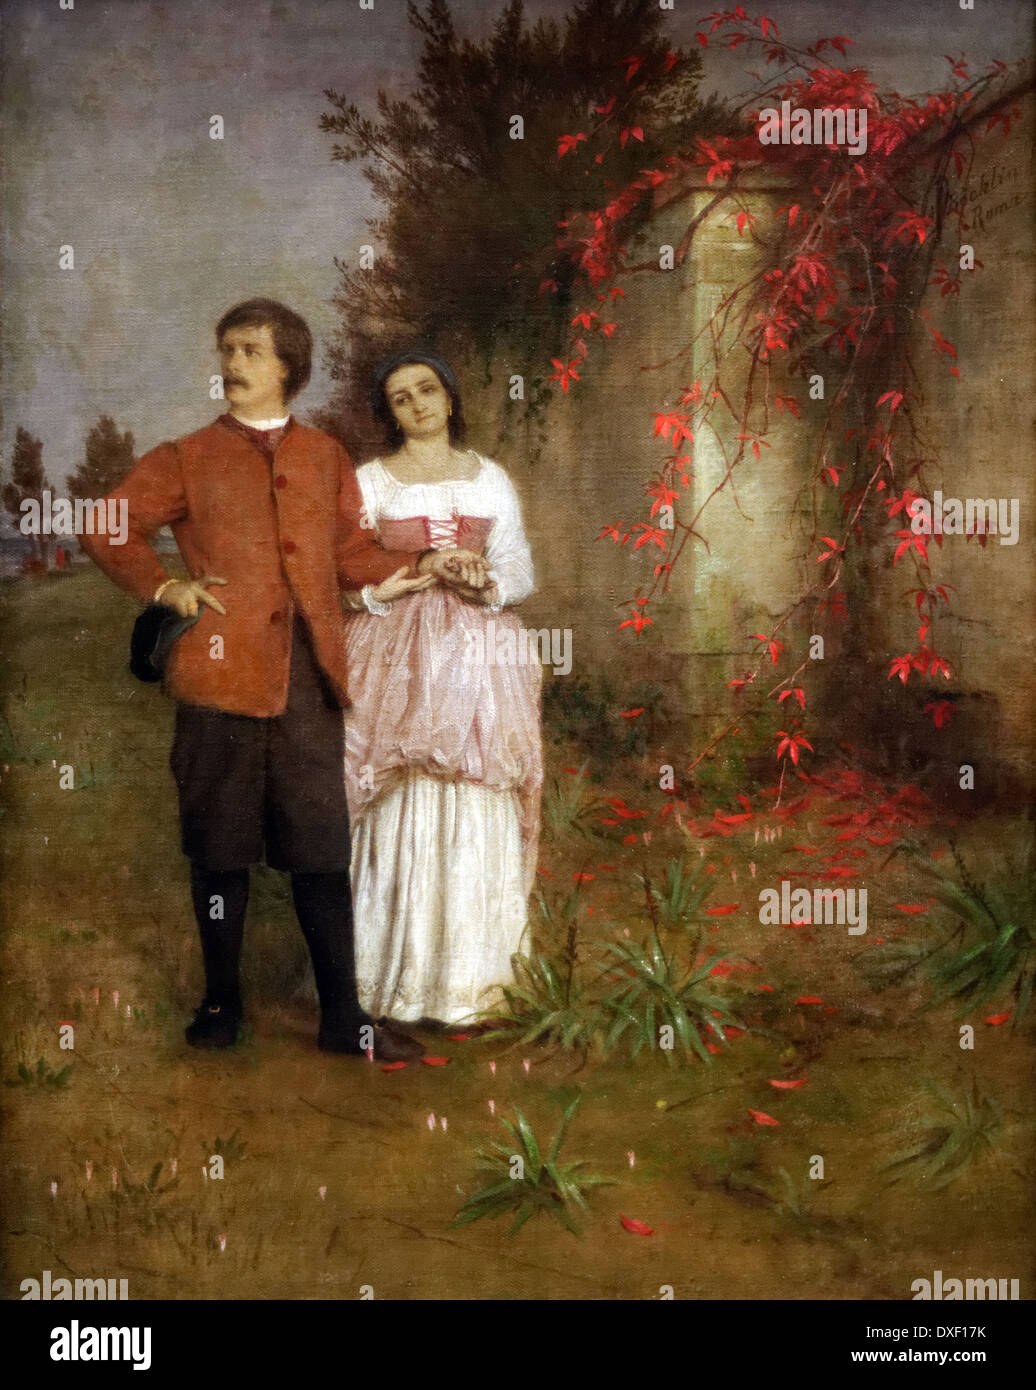 Arnold Böcklin - der Künstler und seine Frau - 1863 - XIX Jahrhundert - deutsche Schule - Alte Nationalgalerie - Berlin Stockfoto